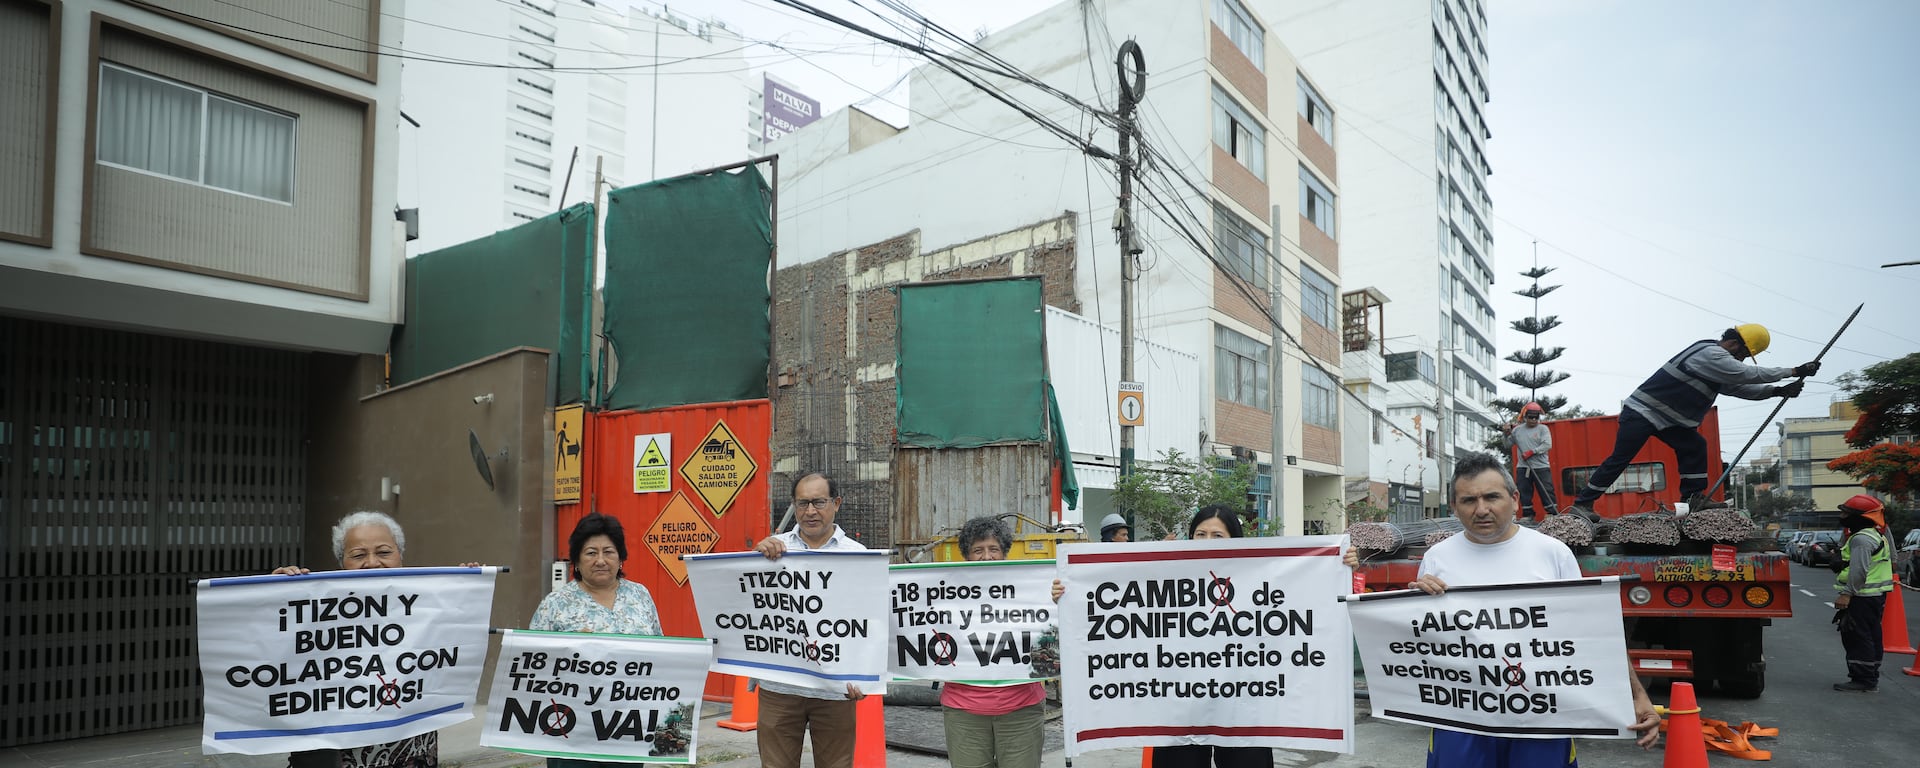 Jesús María: vecinos de Ricardo Tizón y Bueno se oponen a construcción de edificio de 17 pisos por ruidos molestos y fisuras a otras viviendas